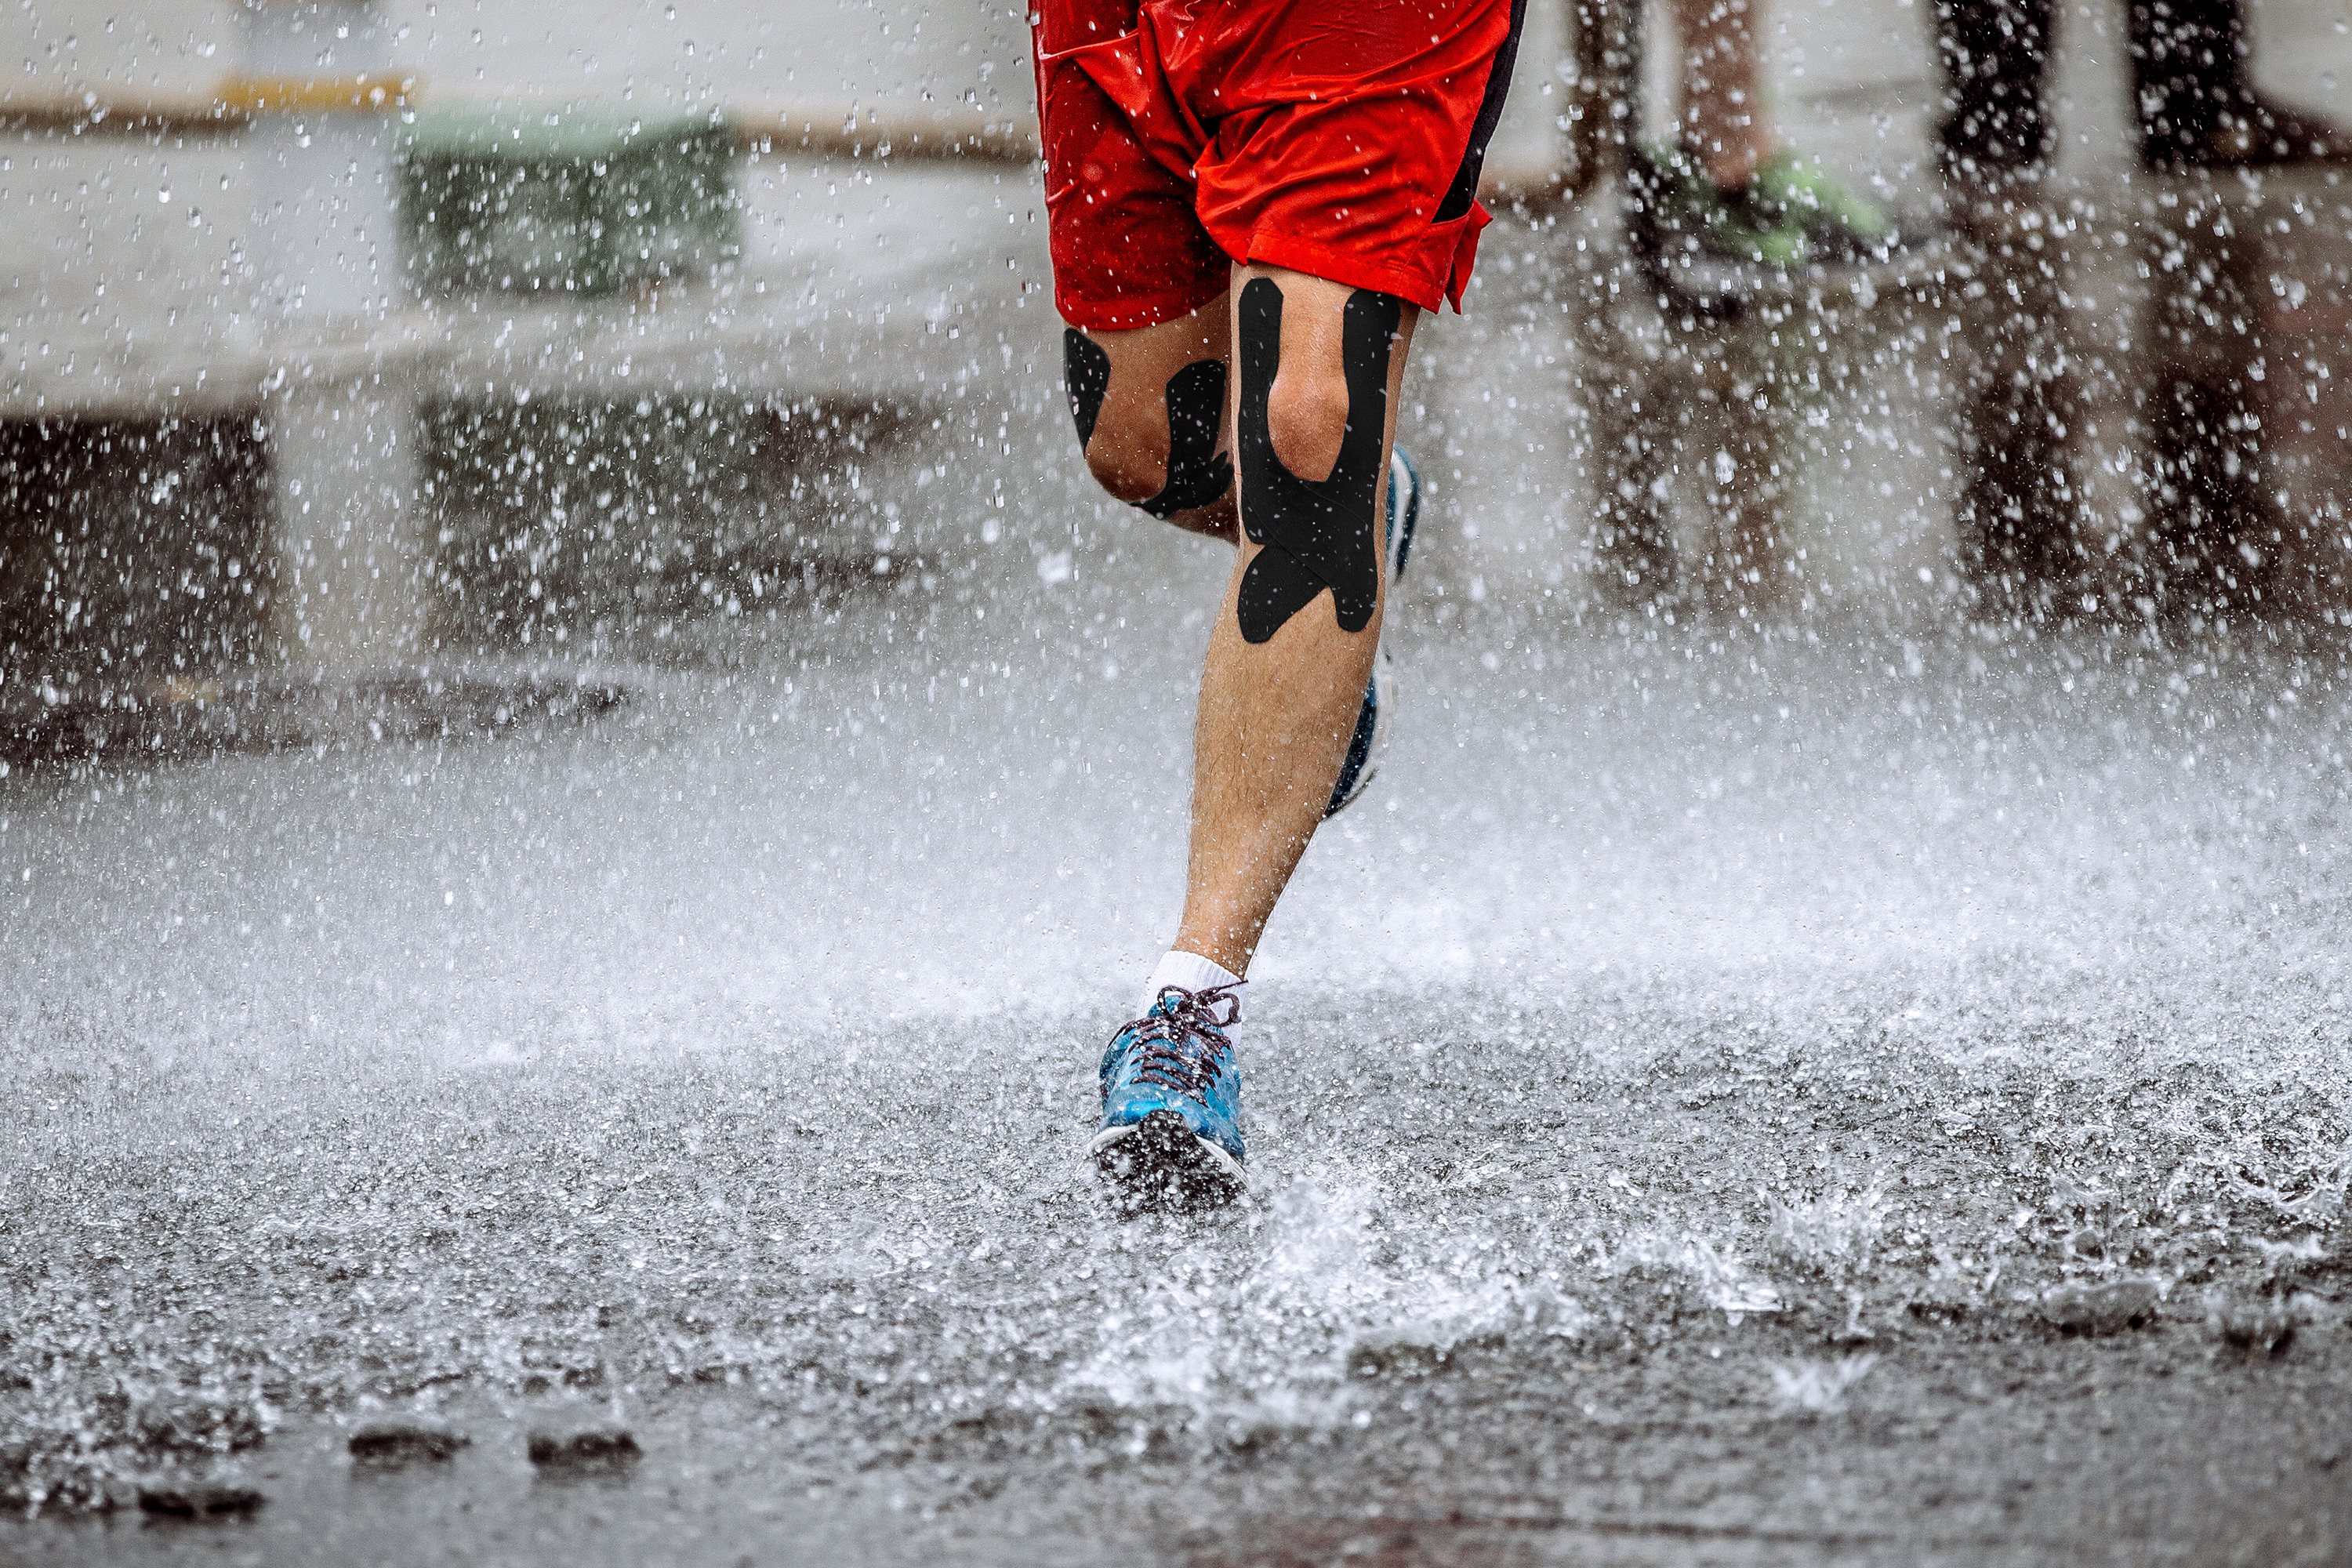 Beine von Jogger im Regen mit getapetem Knie